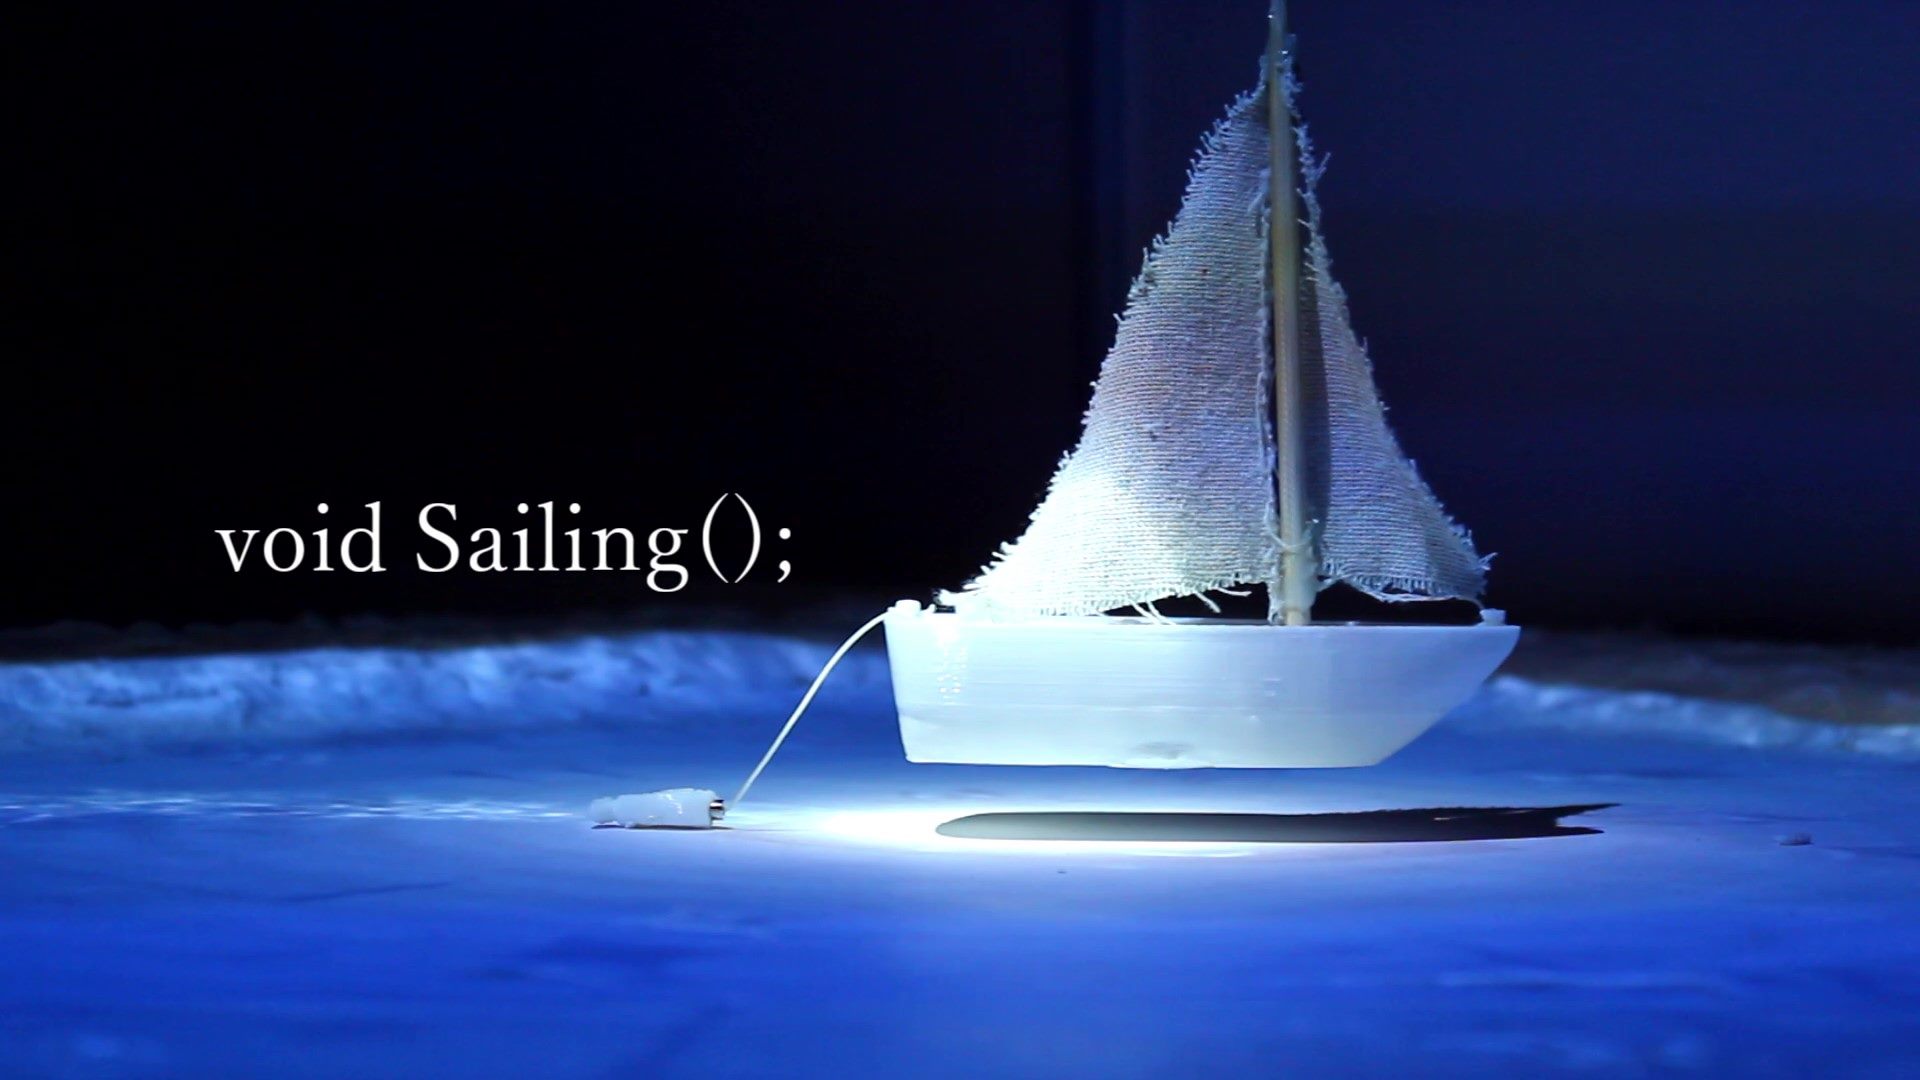 void Sailing();